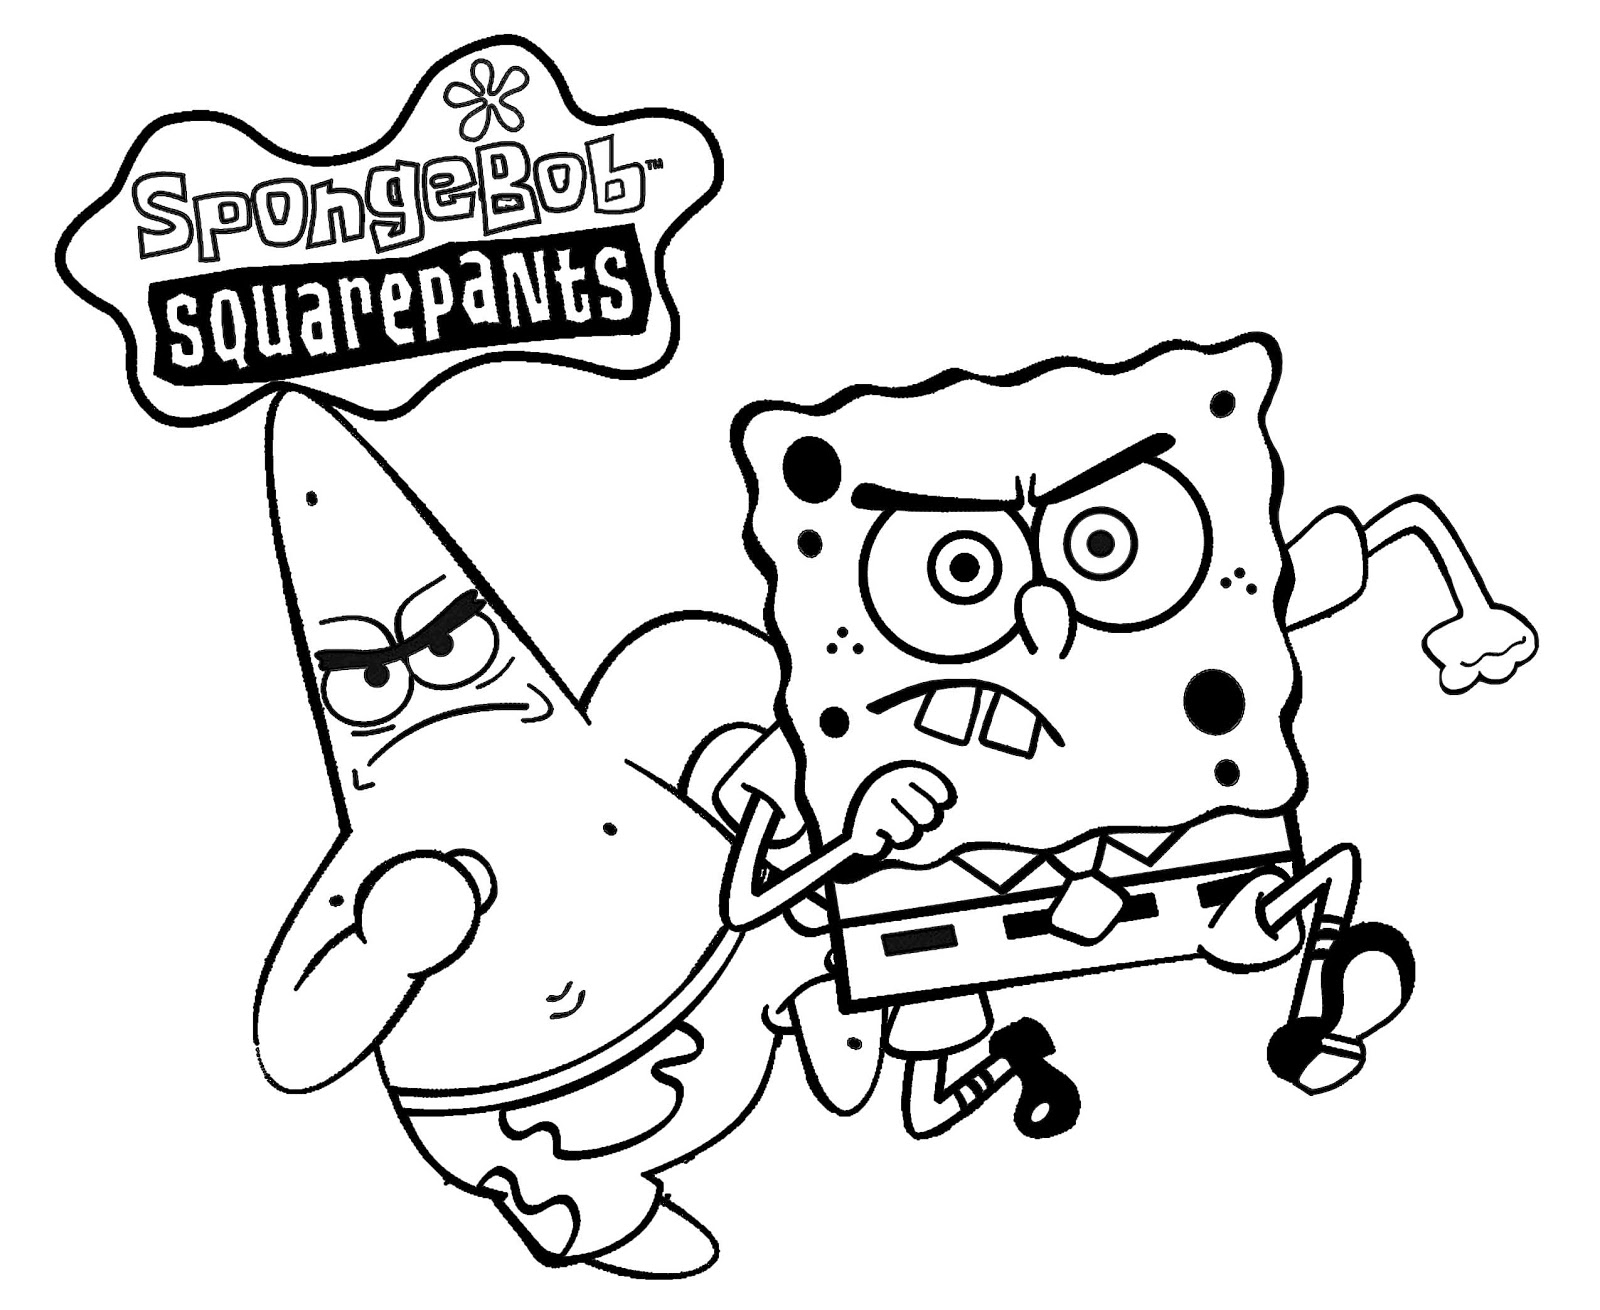  Gambar  Spongebob  Squarepants Untuk Diwarnai gambar  